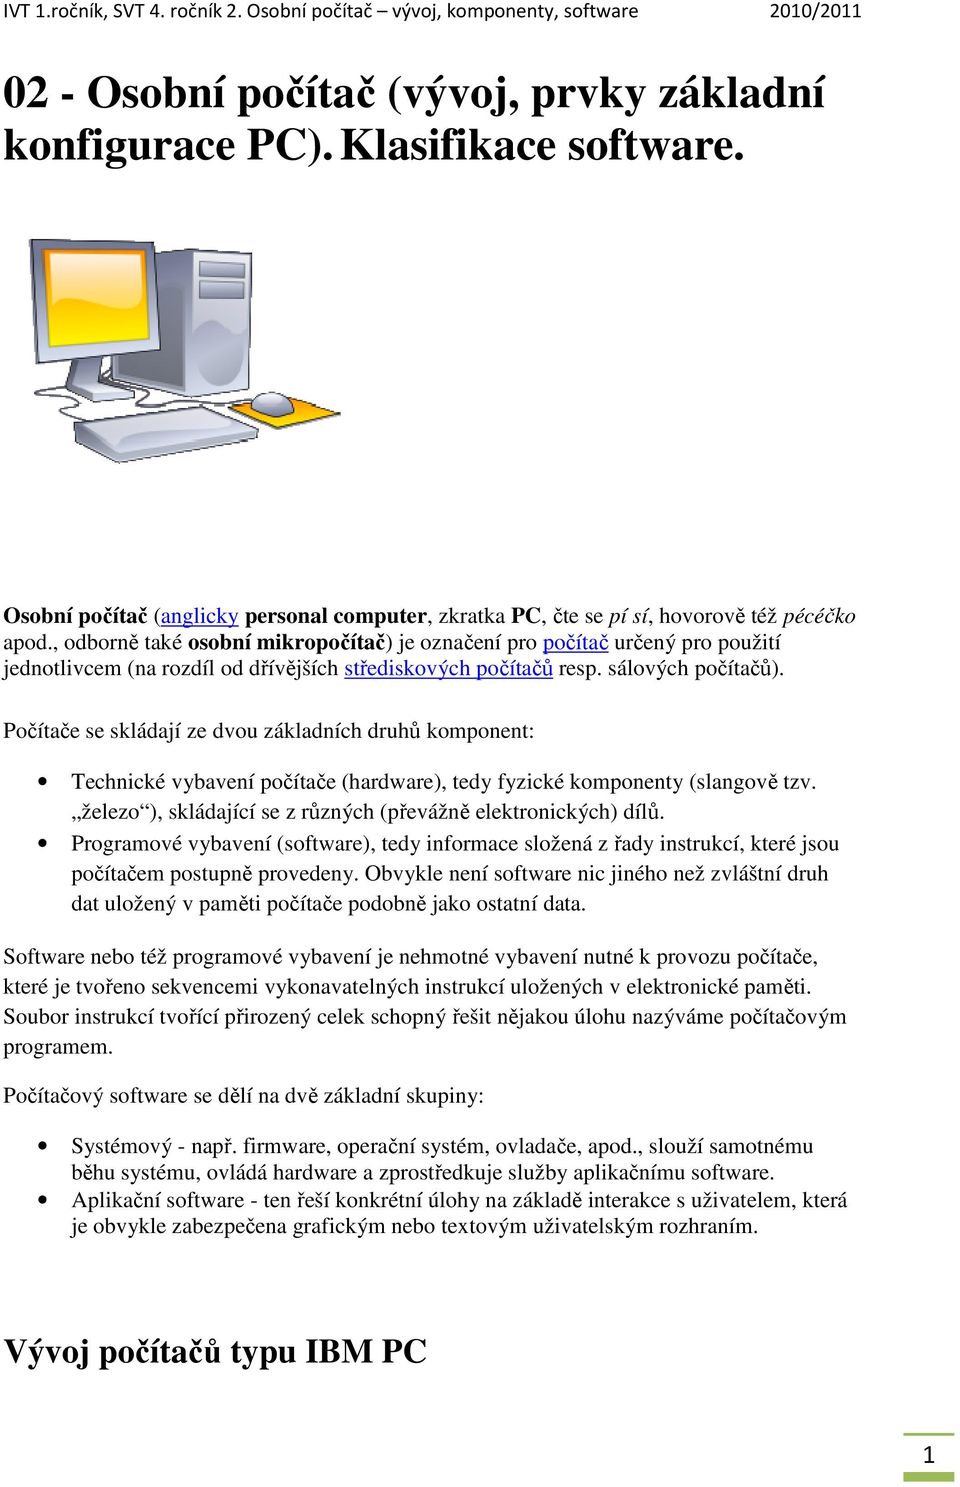 , odborně také osobní mikropočítač) je označení pro počítač určený pro použití jednotlivcem (na rozdíl od dřívějších střediskových počítačů resp. sálových počítačů).